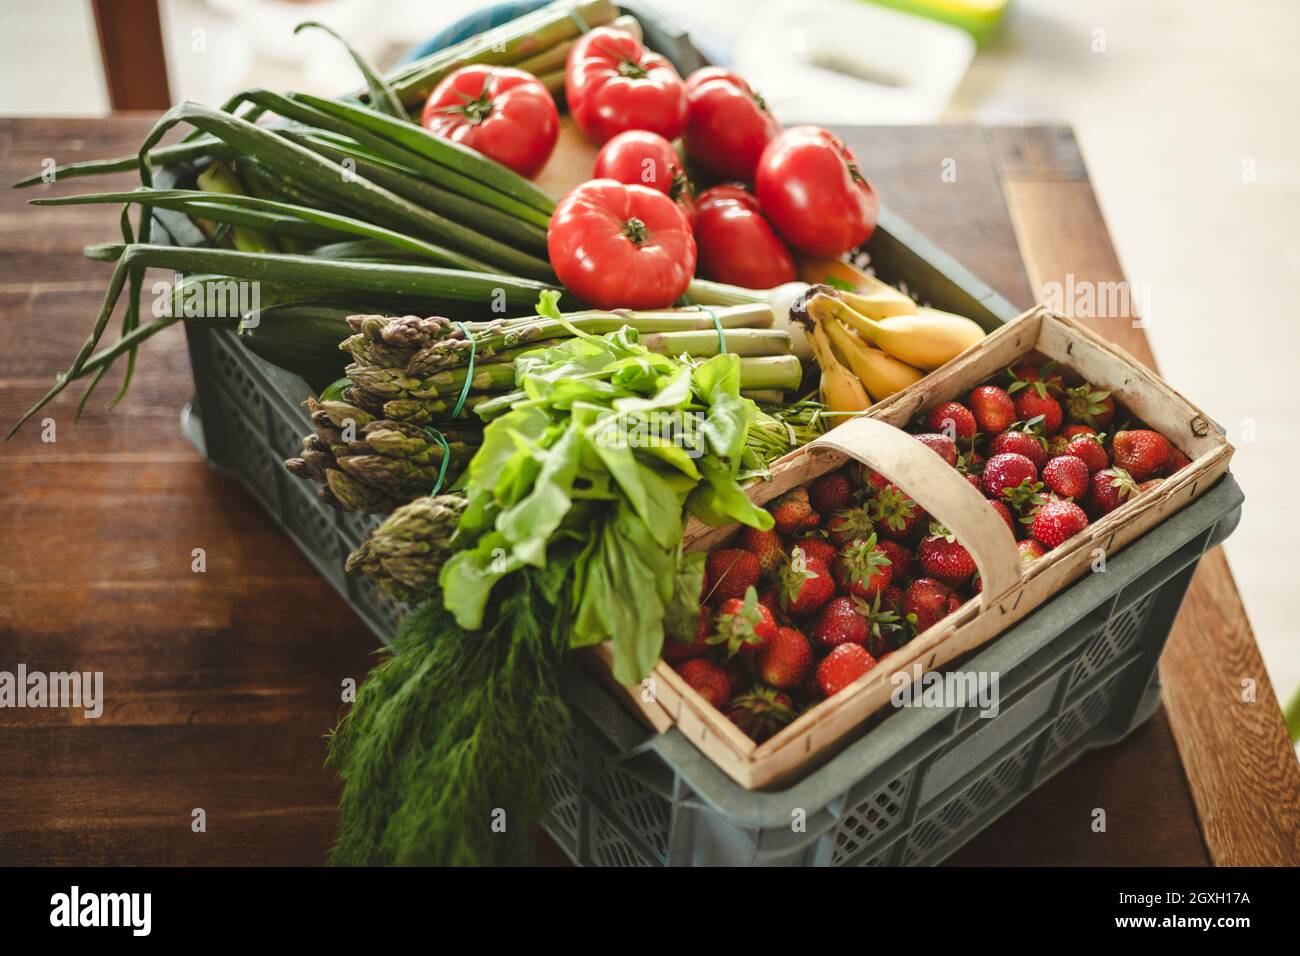 Lieferkarton für Obst und Gemüse auf dem Esstisch Stockfoto